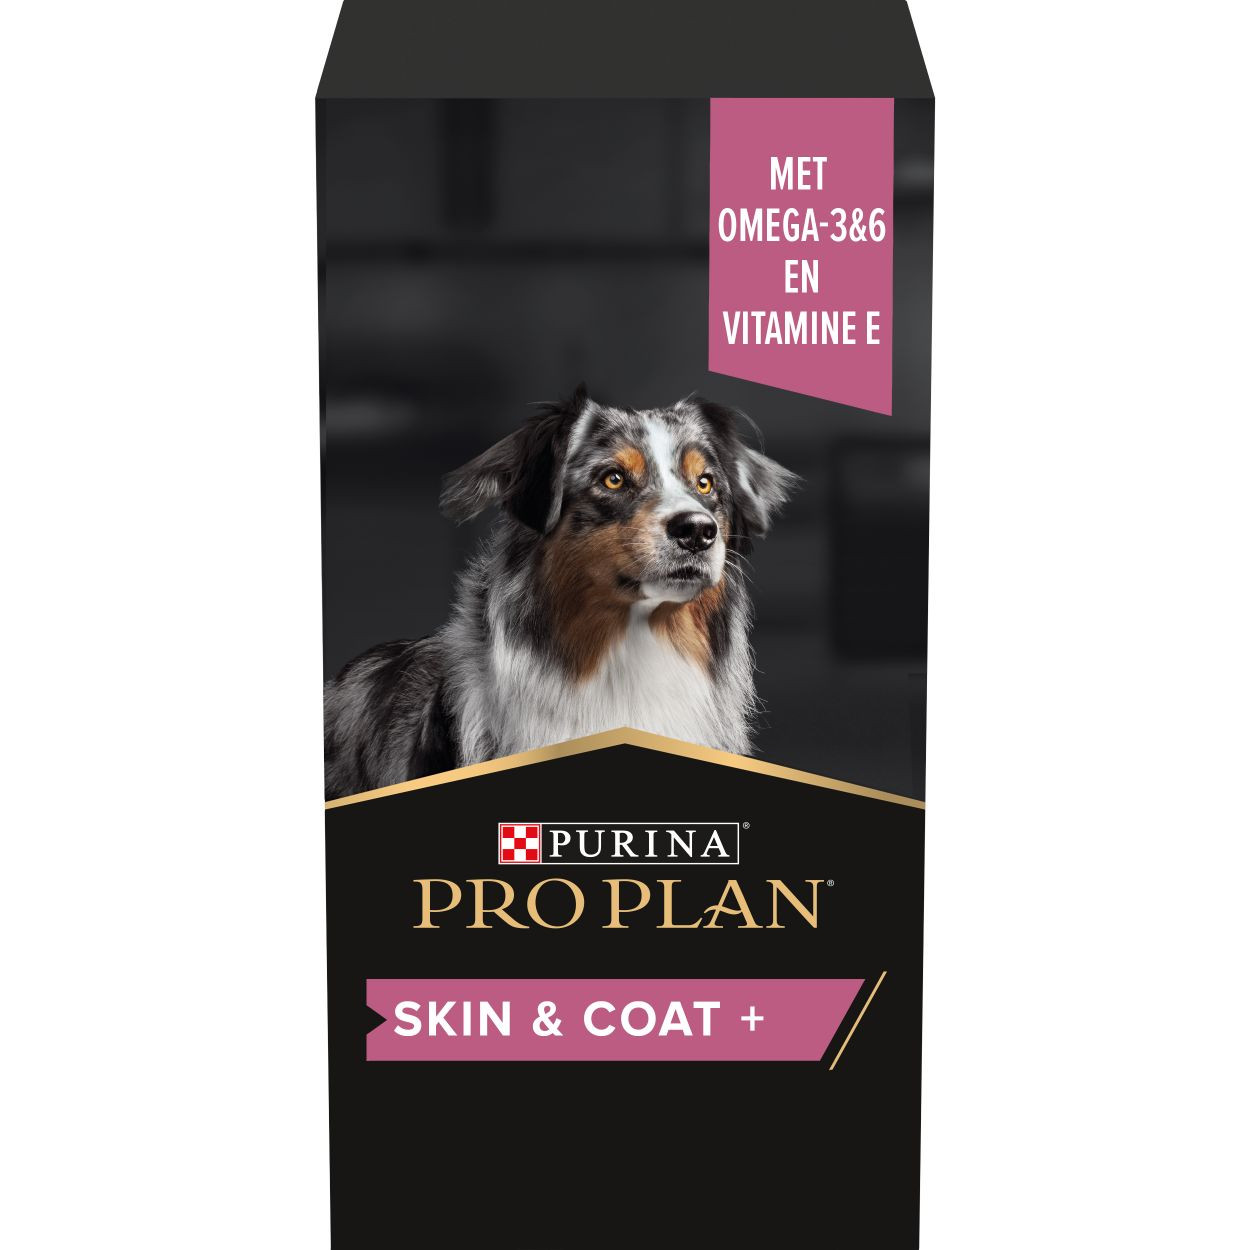 Purina Pro Plan Skin & Coat kosttillskott hund (olja 250 ml)